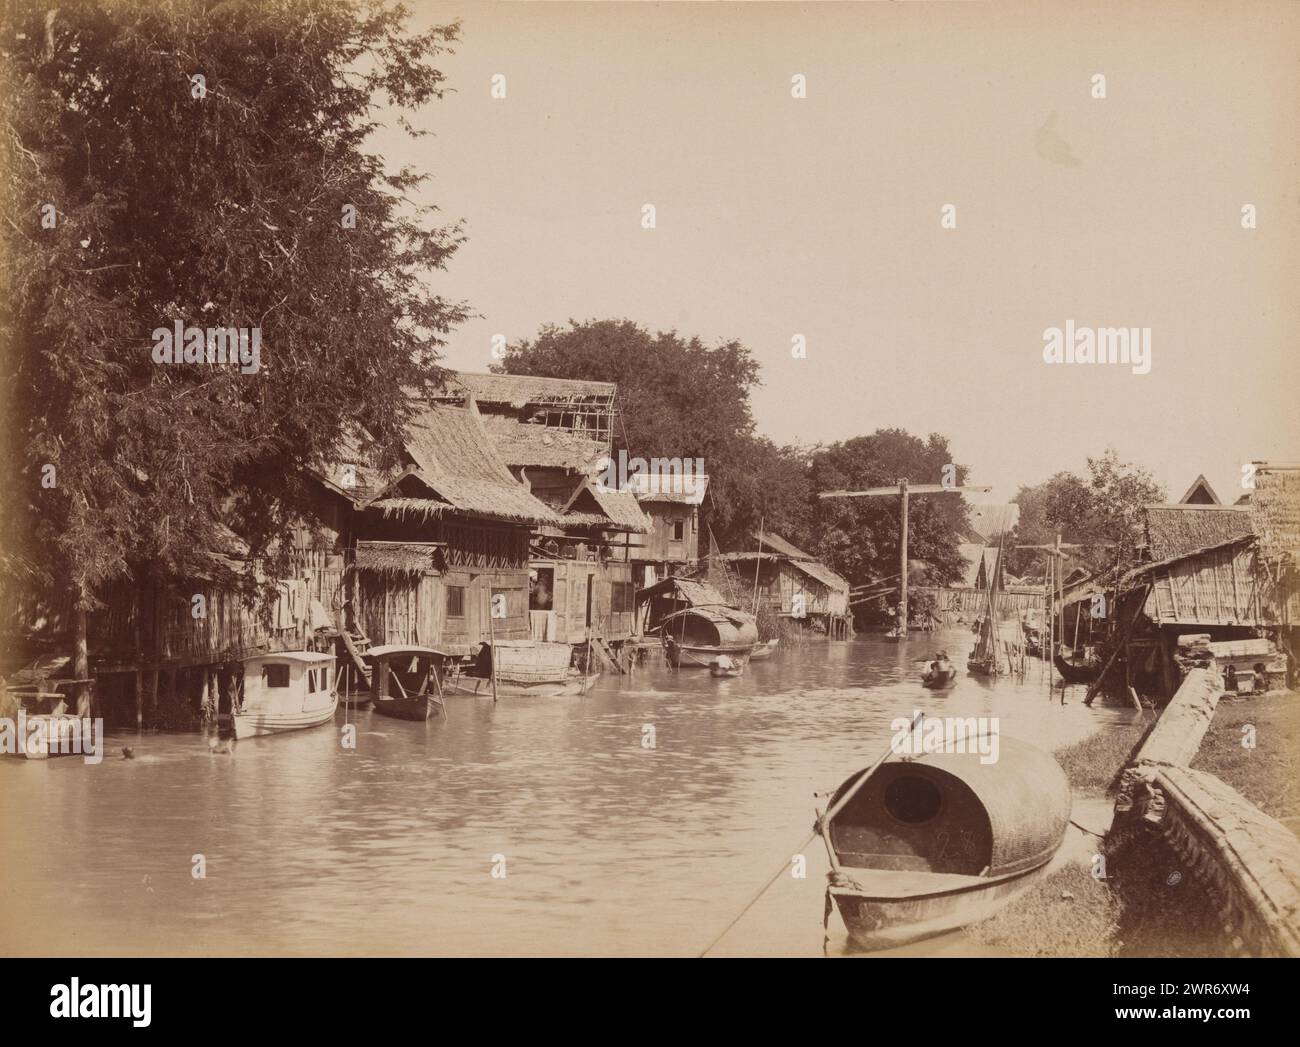 Vue de maisons le long d'un khlong à Bangkok, Siam, Bangkok - Klong San - vue de maisons indigènes (titre sur objet), anonyme, Bangkok, 1860 - 1900, papier, tirage à l'albumen, hauteur 235 mm × largeur 315 mm, photographie Banque D'Images